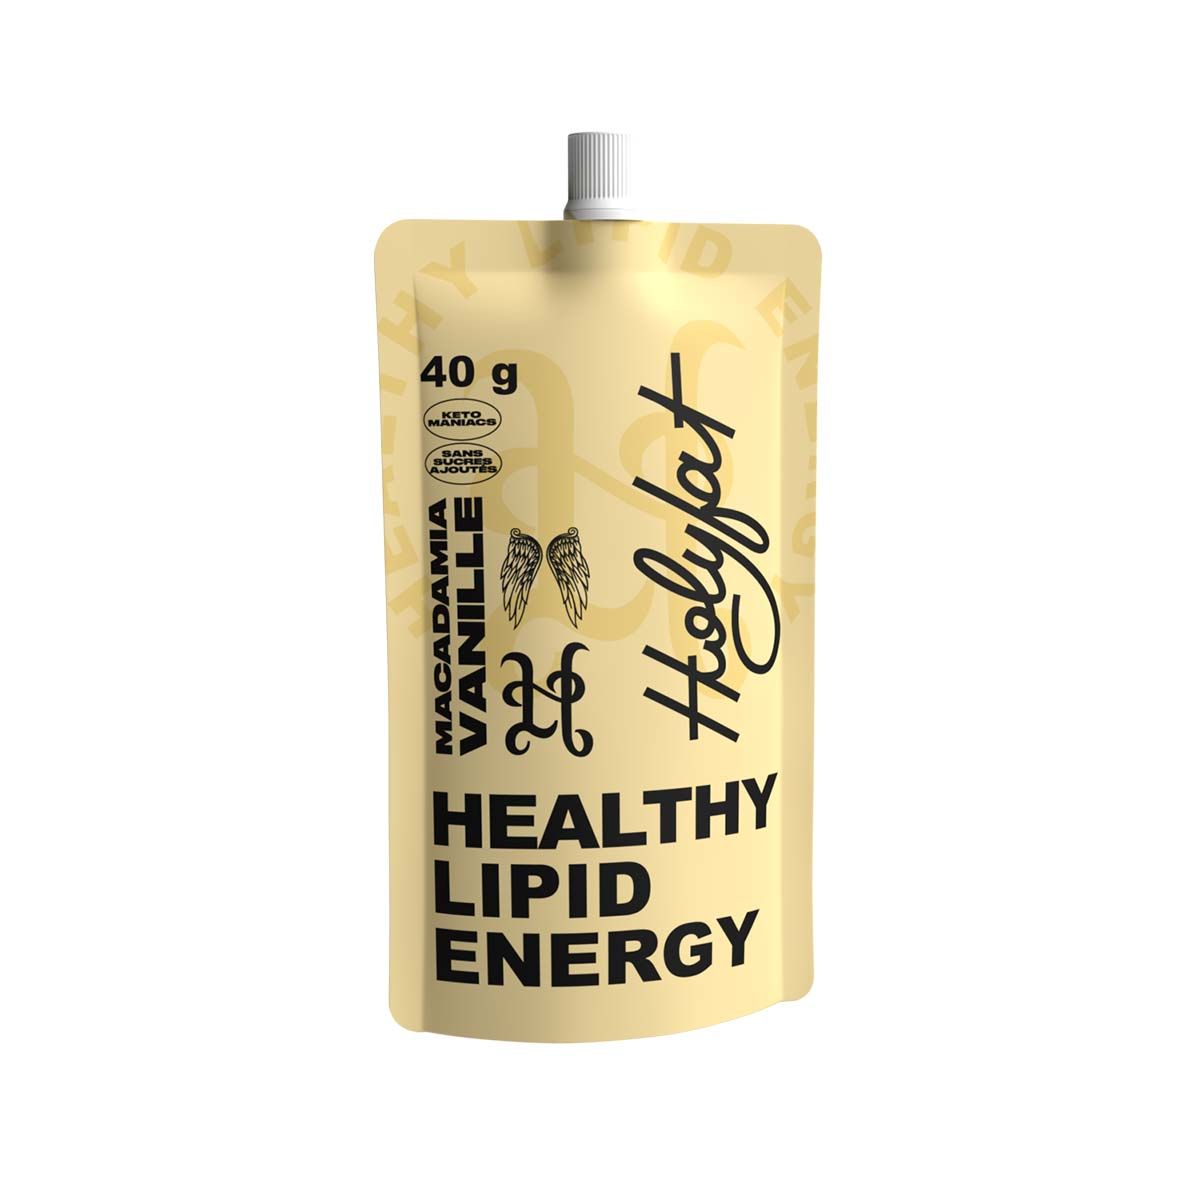 Puré energético Holyfat - Nuez de macadamia, vainilla